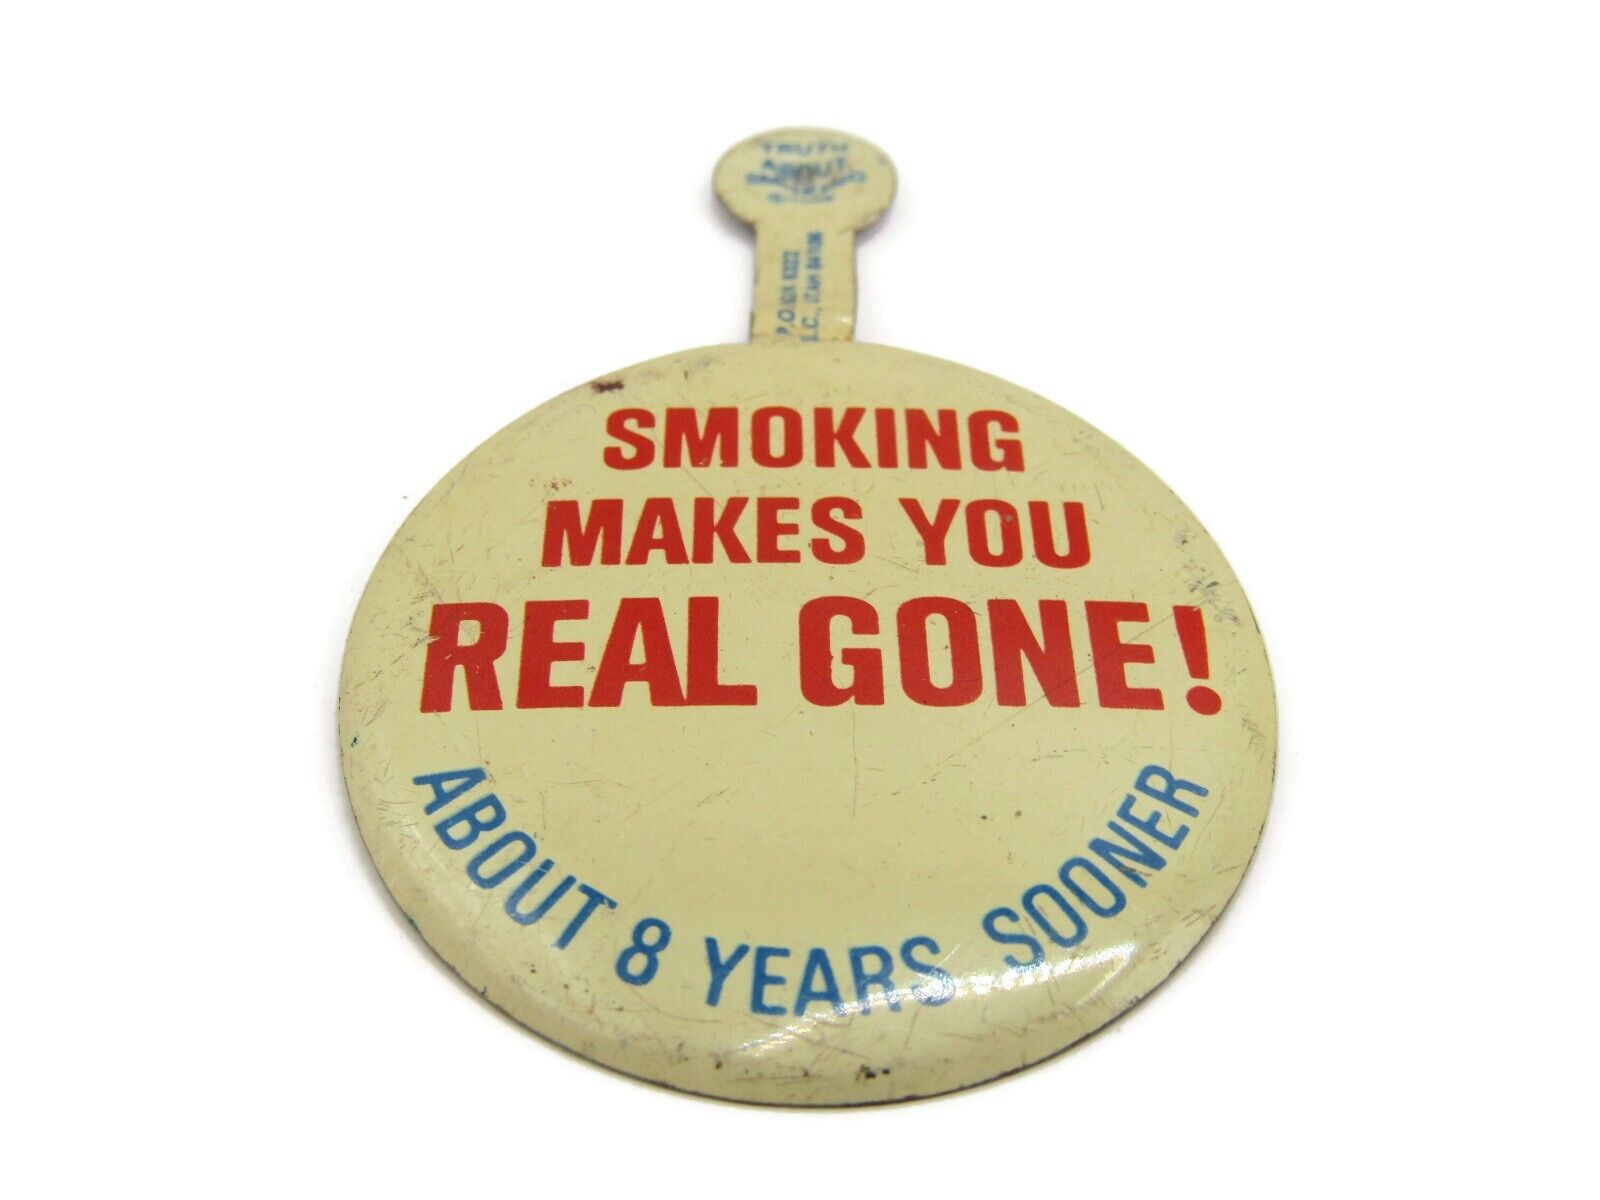 Smoking Makes You Real Gone Pin Button Vintage Anti-Smoking